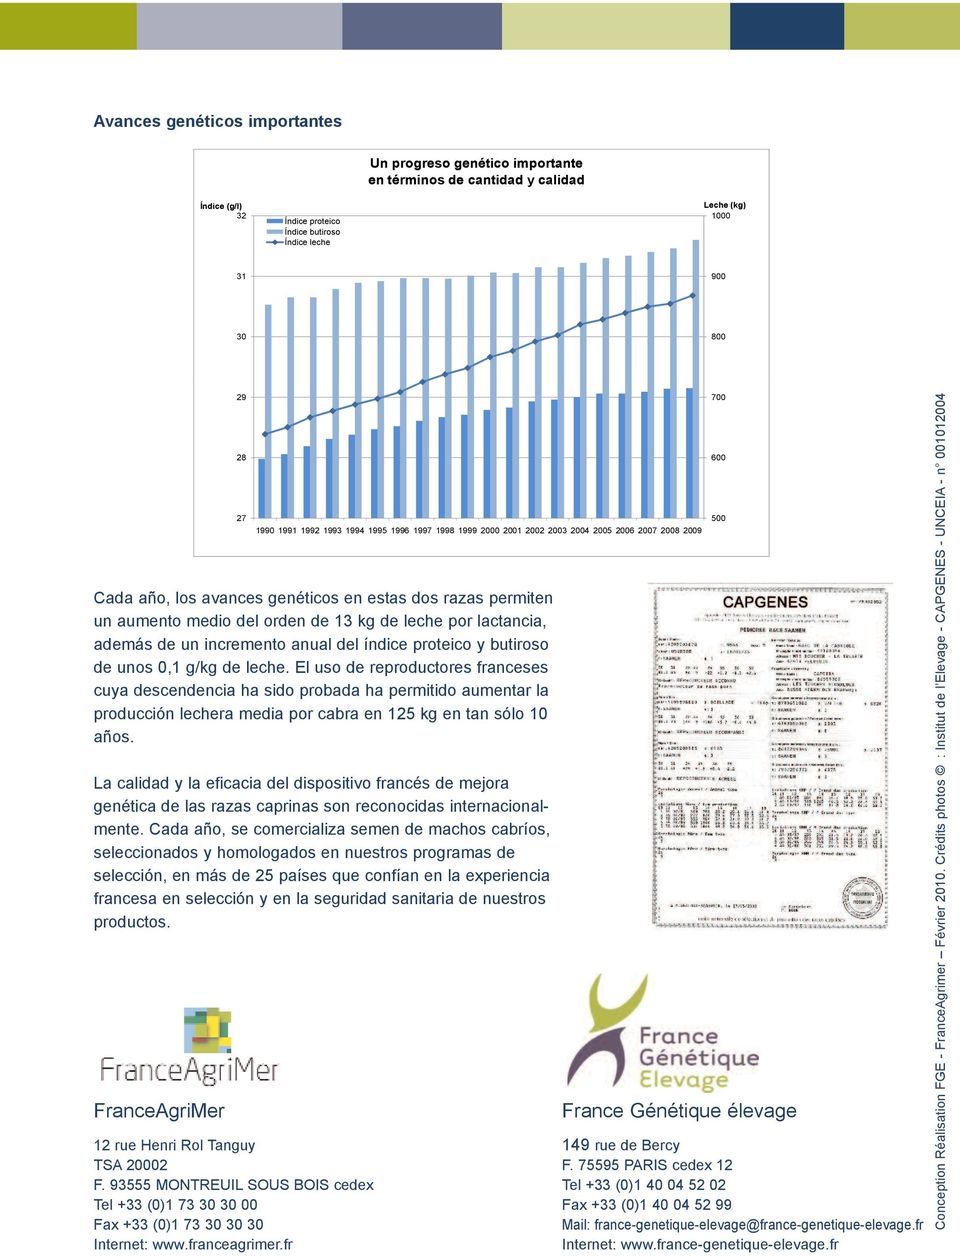 La calidad y la eficacia del dispositivo francés de mejora genética de las razas caprinas son reconocidas internacionalmente.